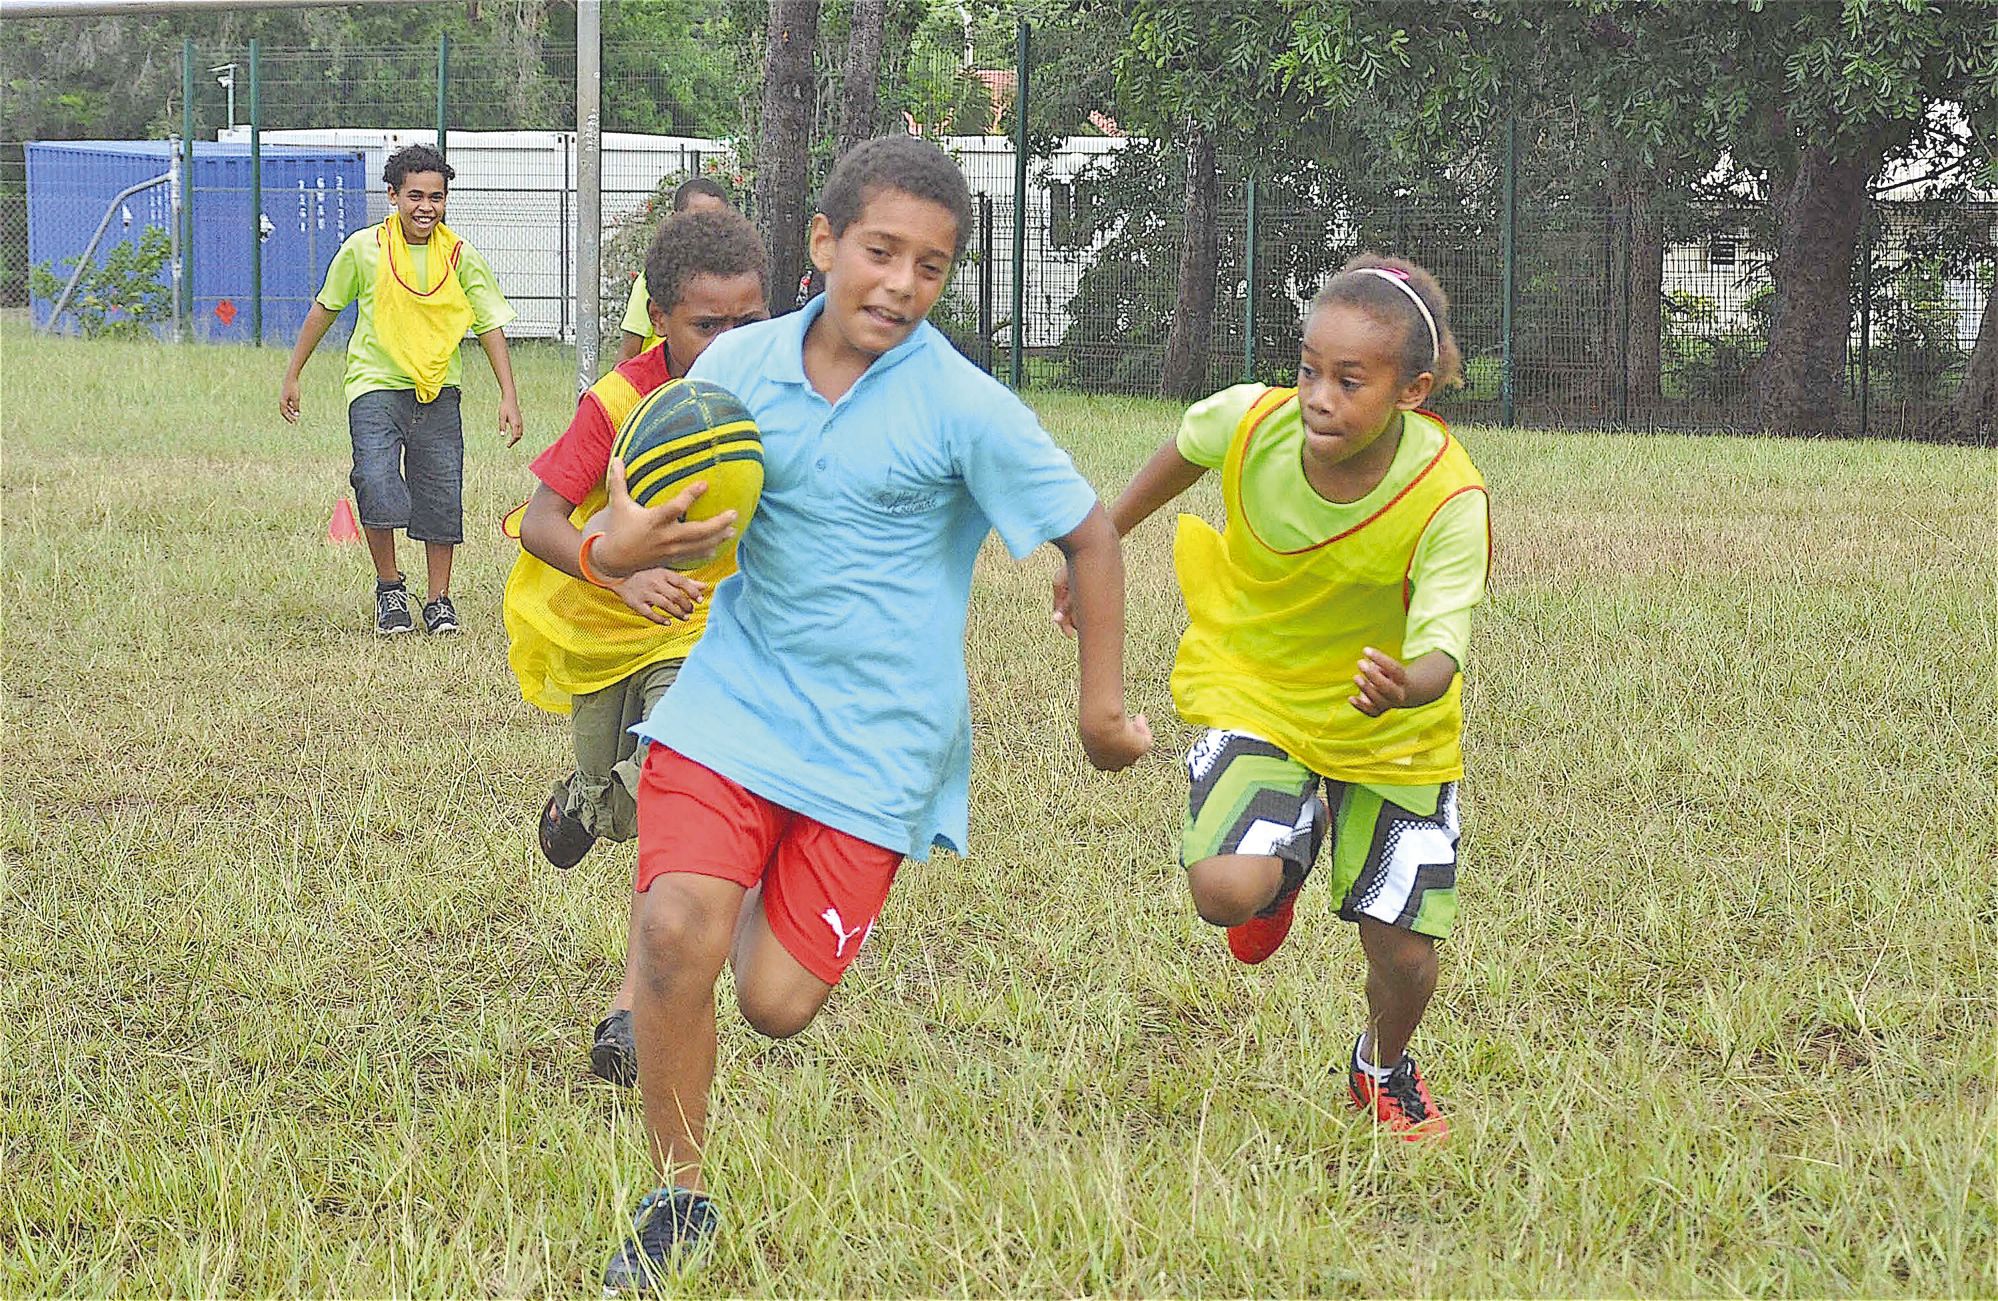 Le rugby est un peu l’activité chouchoute des élèves. Cette année, la ligue de rugby a proposé la Coupe des collèges de Touch rugby, pour les élèves de 6e dans un premier temps et hors cadre UNSS.